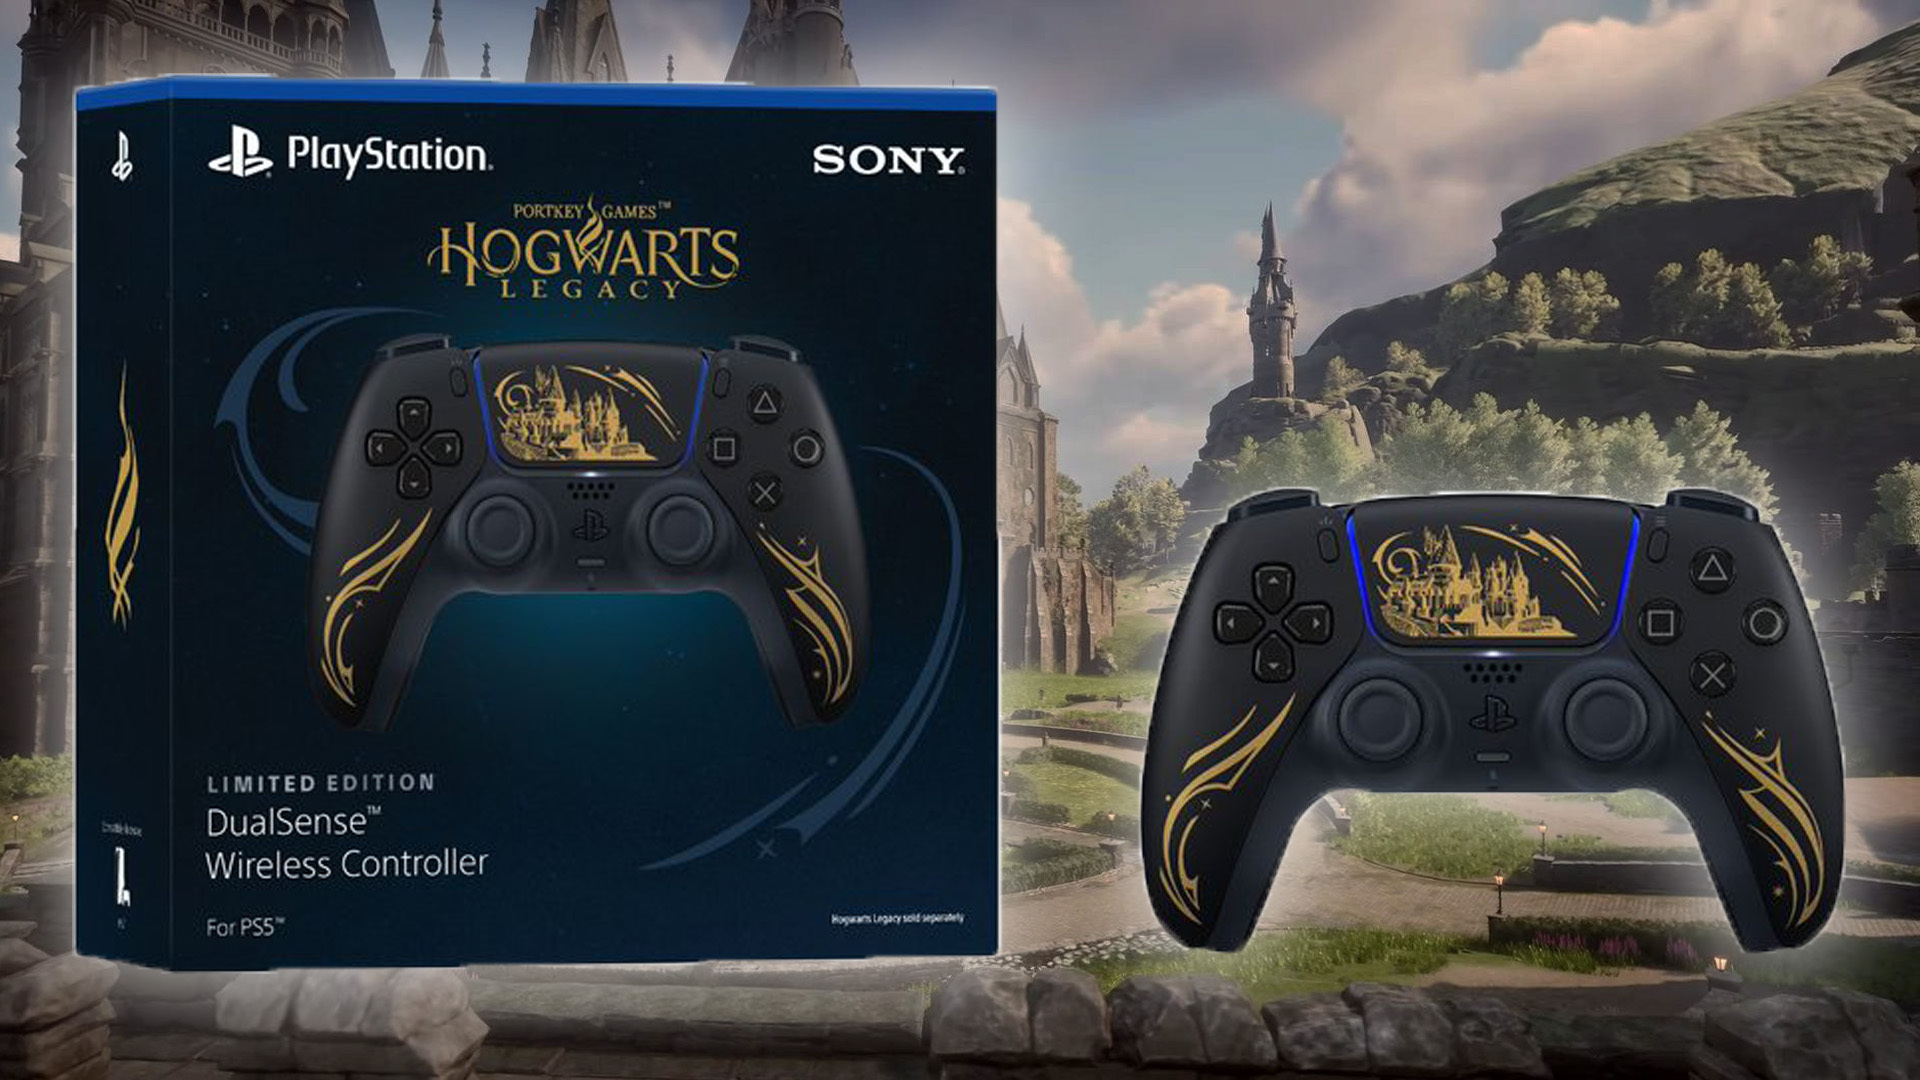 Hogwarts Legacy exploite tout le potentiel de la manette DualSense de la PS5  - Numerama